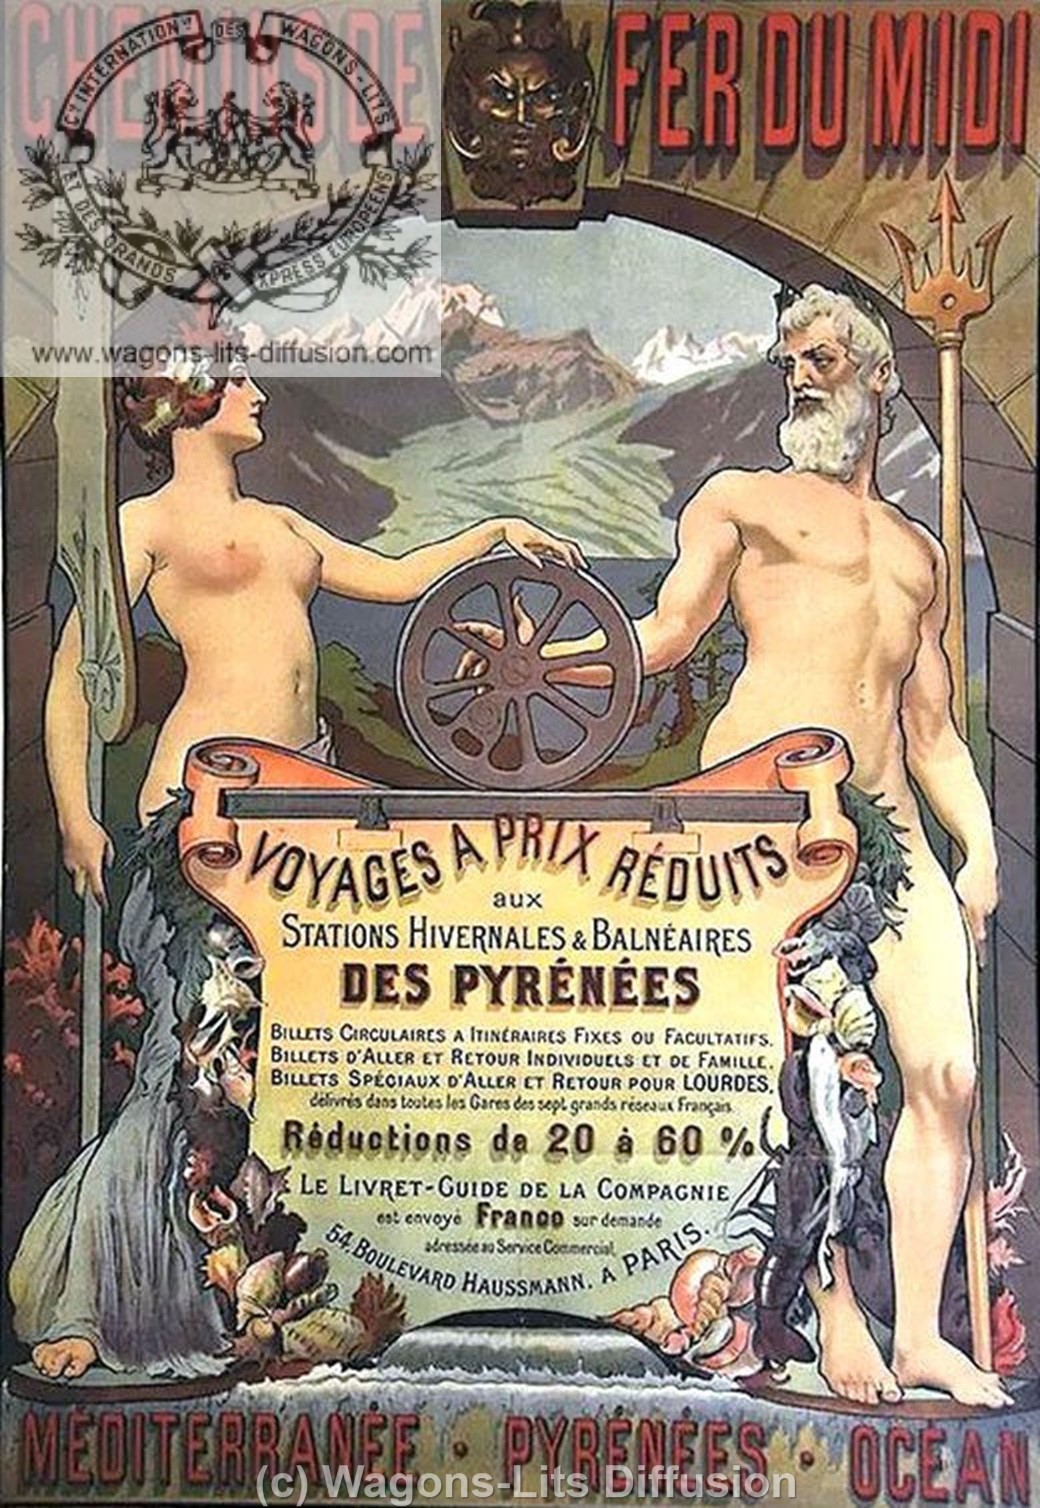 Reseau pyrenees 2 - Ref 2163